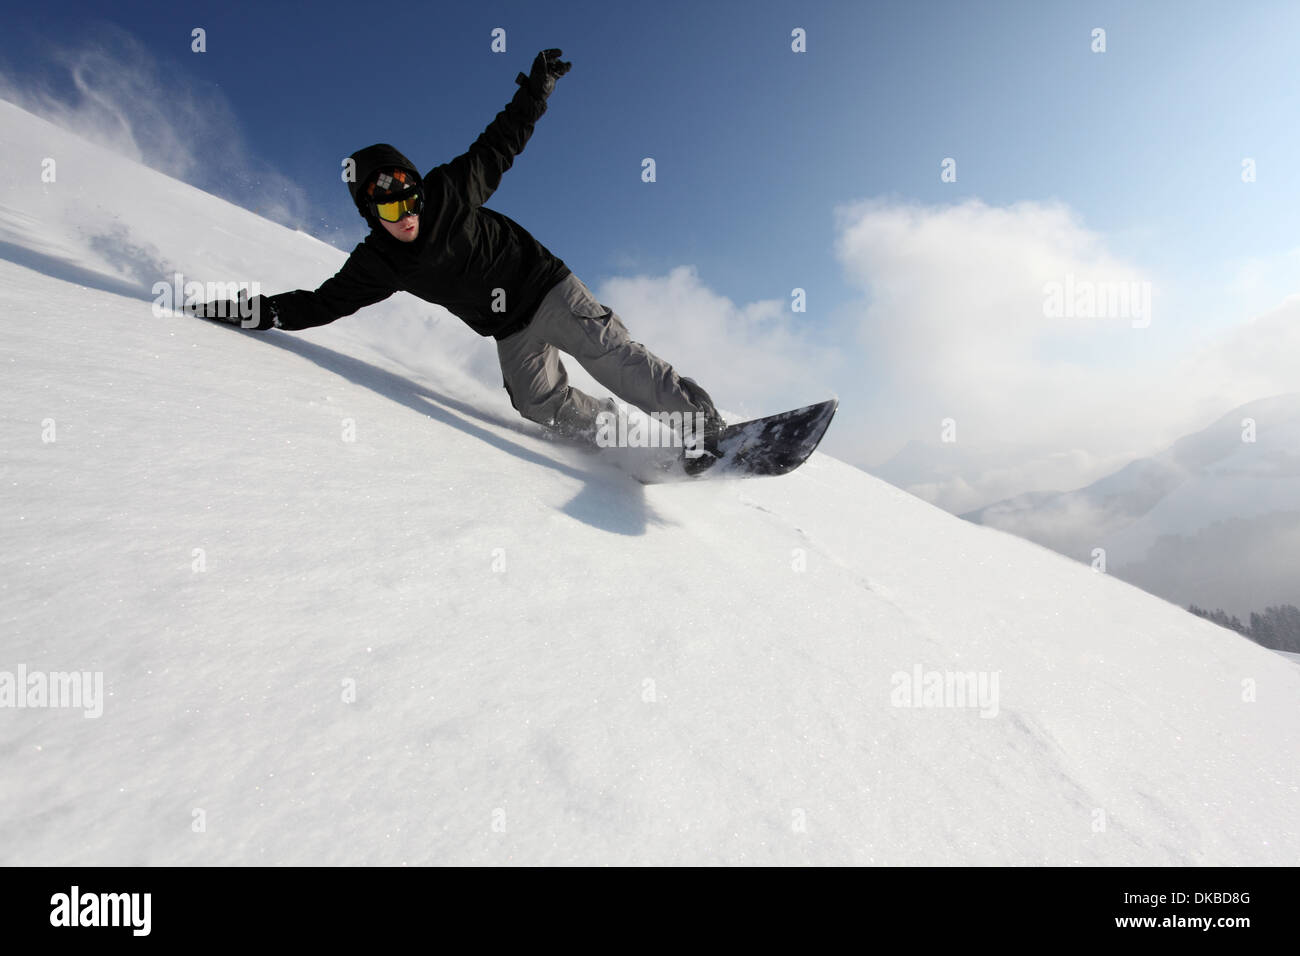 Snowboarder going down mountain Stock Photo